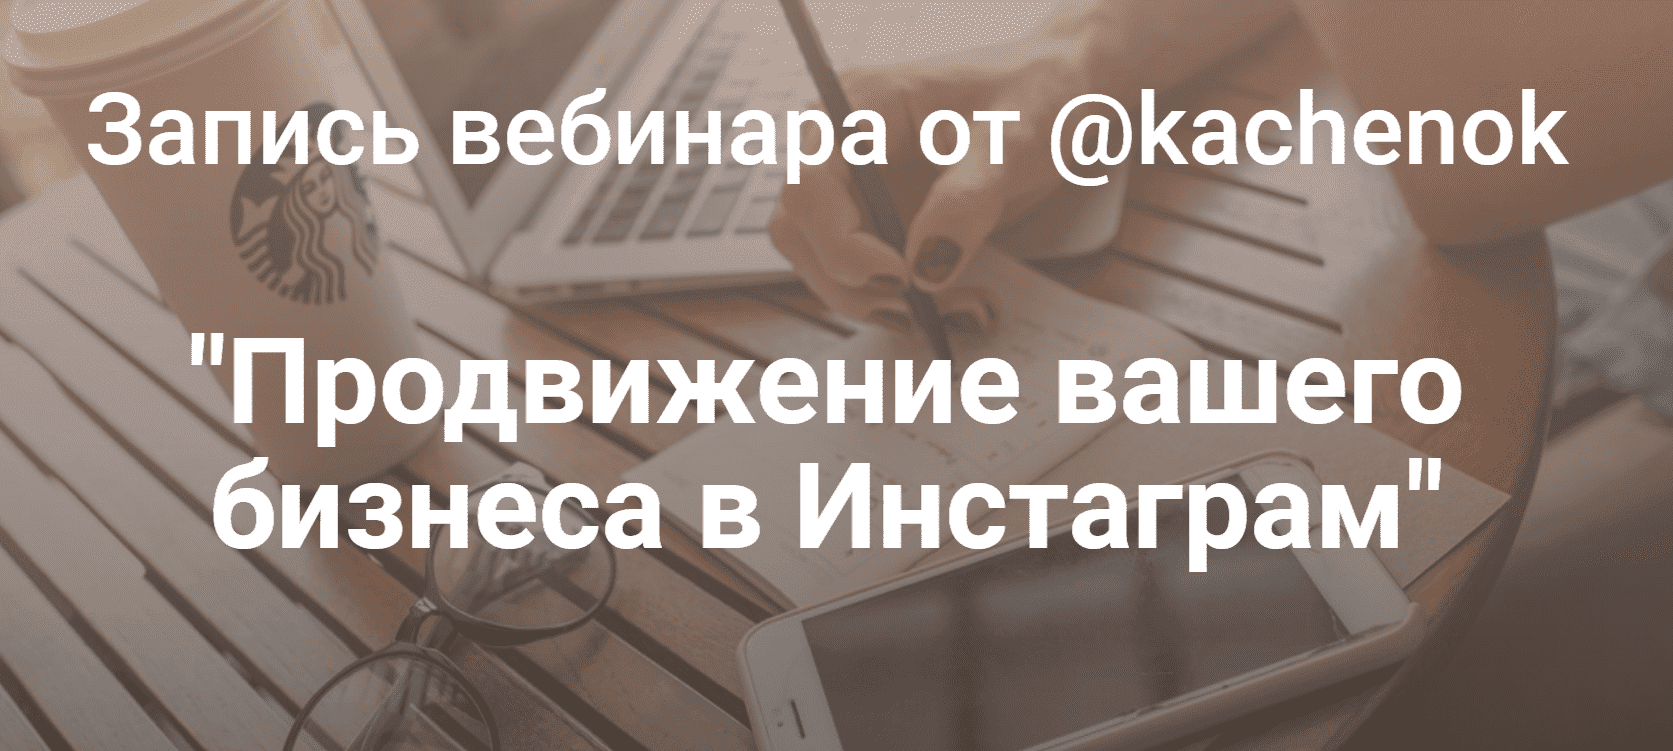 Скачать - Kachenok. Продвижение вашего бизнеса в Инстаграм (2019) (1).png